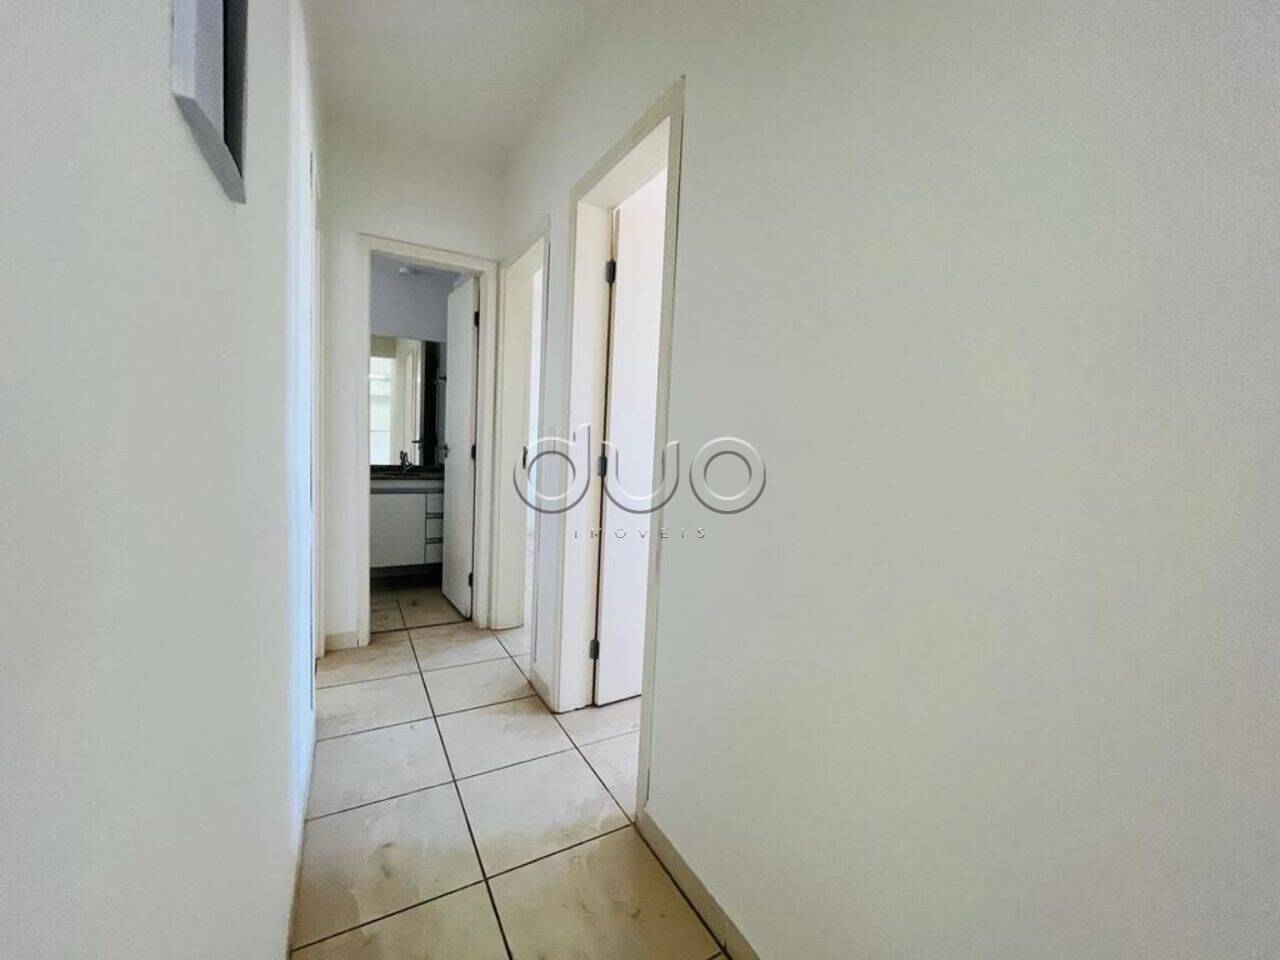 Apartamento com 3 dormitórios à venda, 85 m² por R$ 500.000 - Paulista - Piracicaba/SP